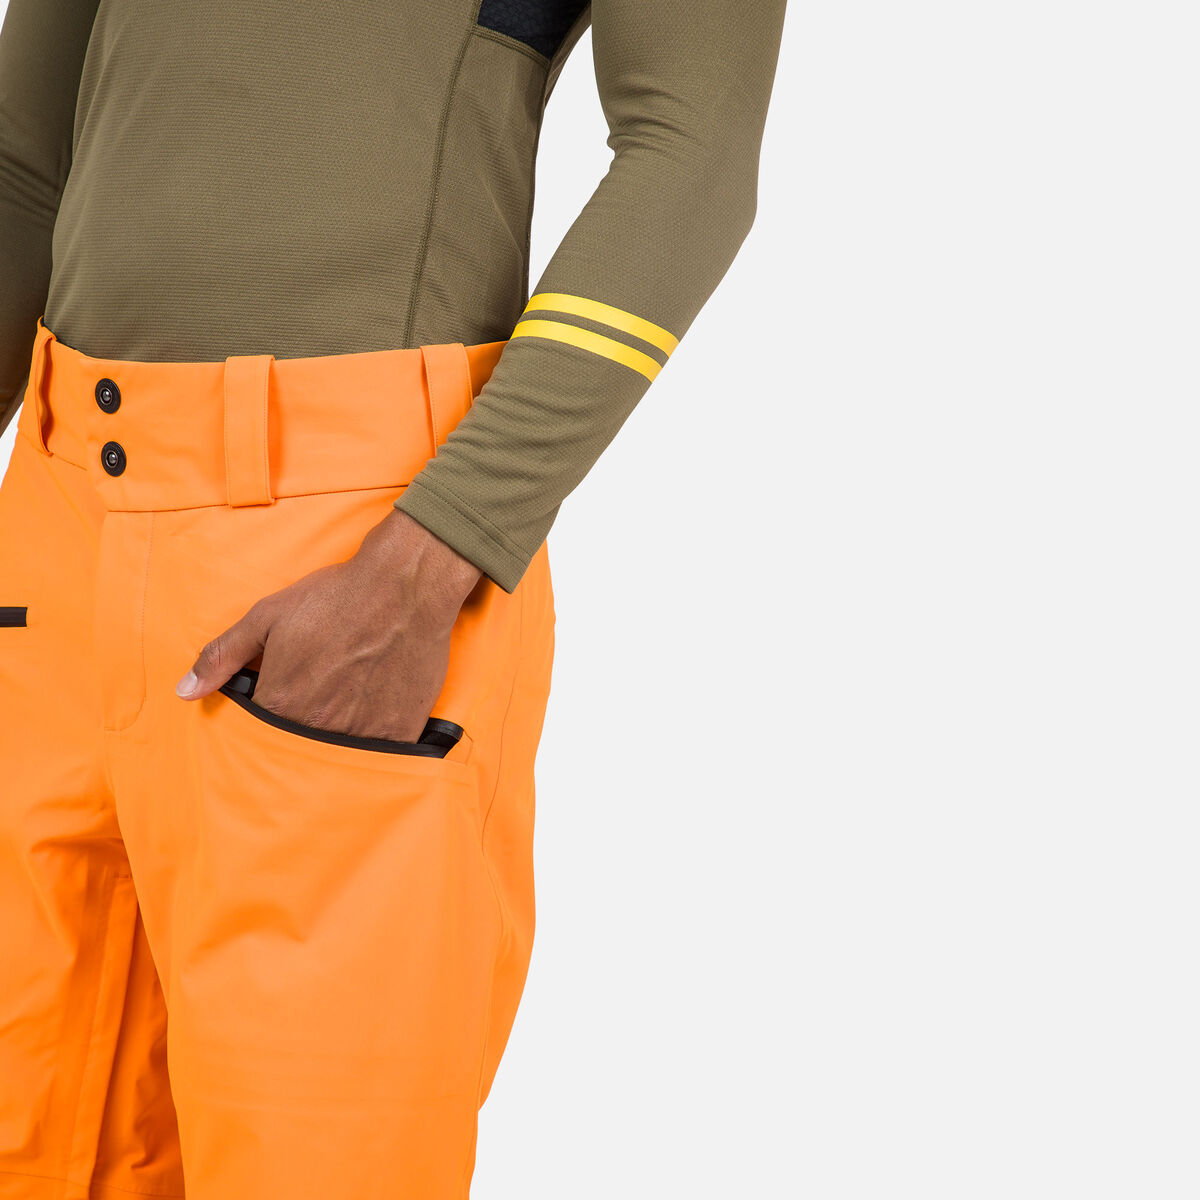 Rossignol Men's Evader Ski Pants orange